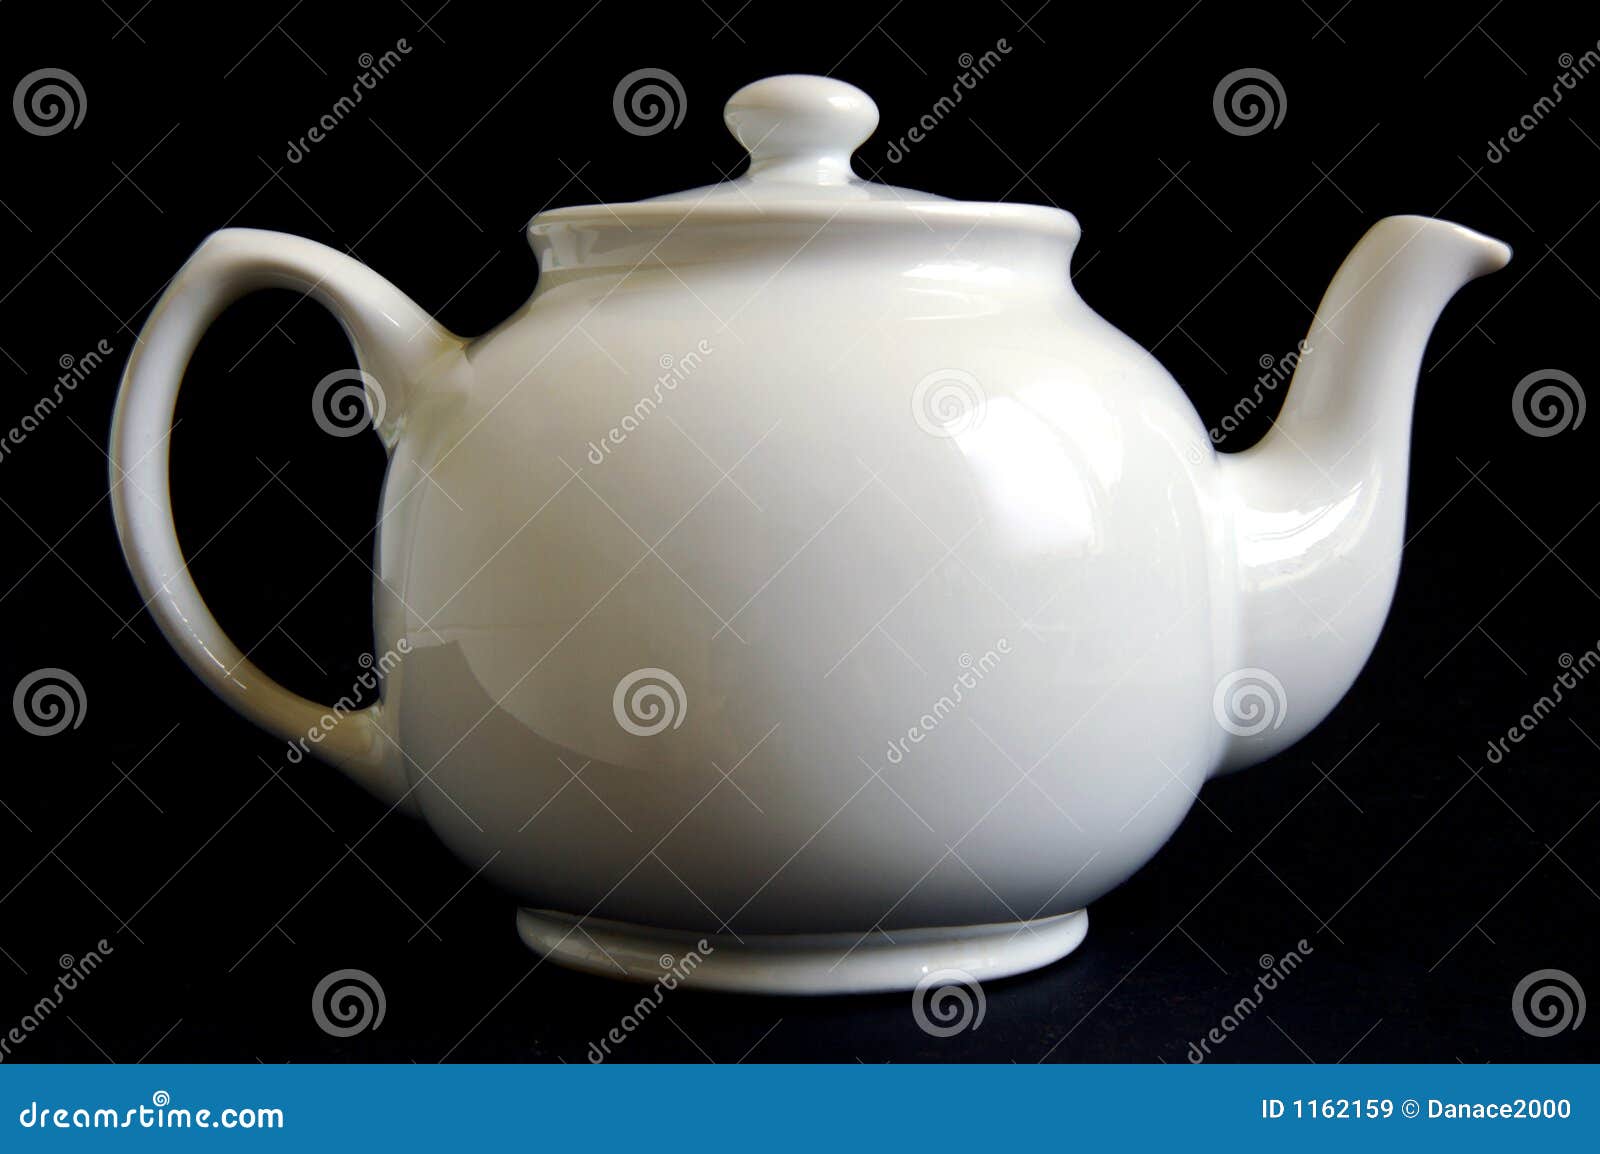 https://thumbs.dreamstime.com/z/white-teapot-1162159.jpg